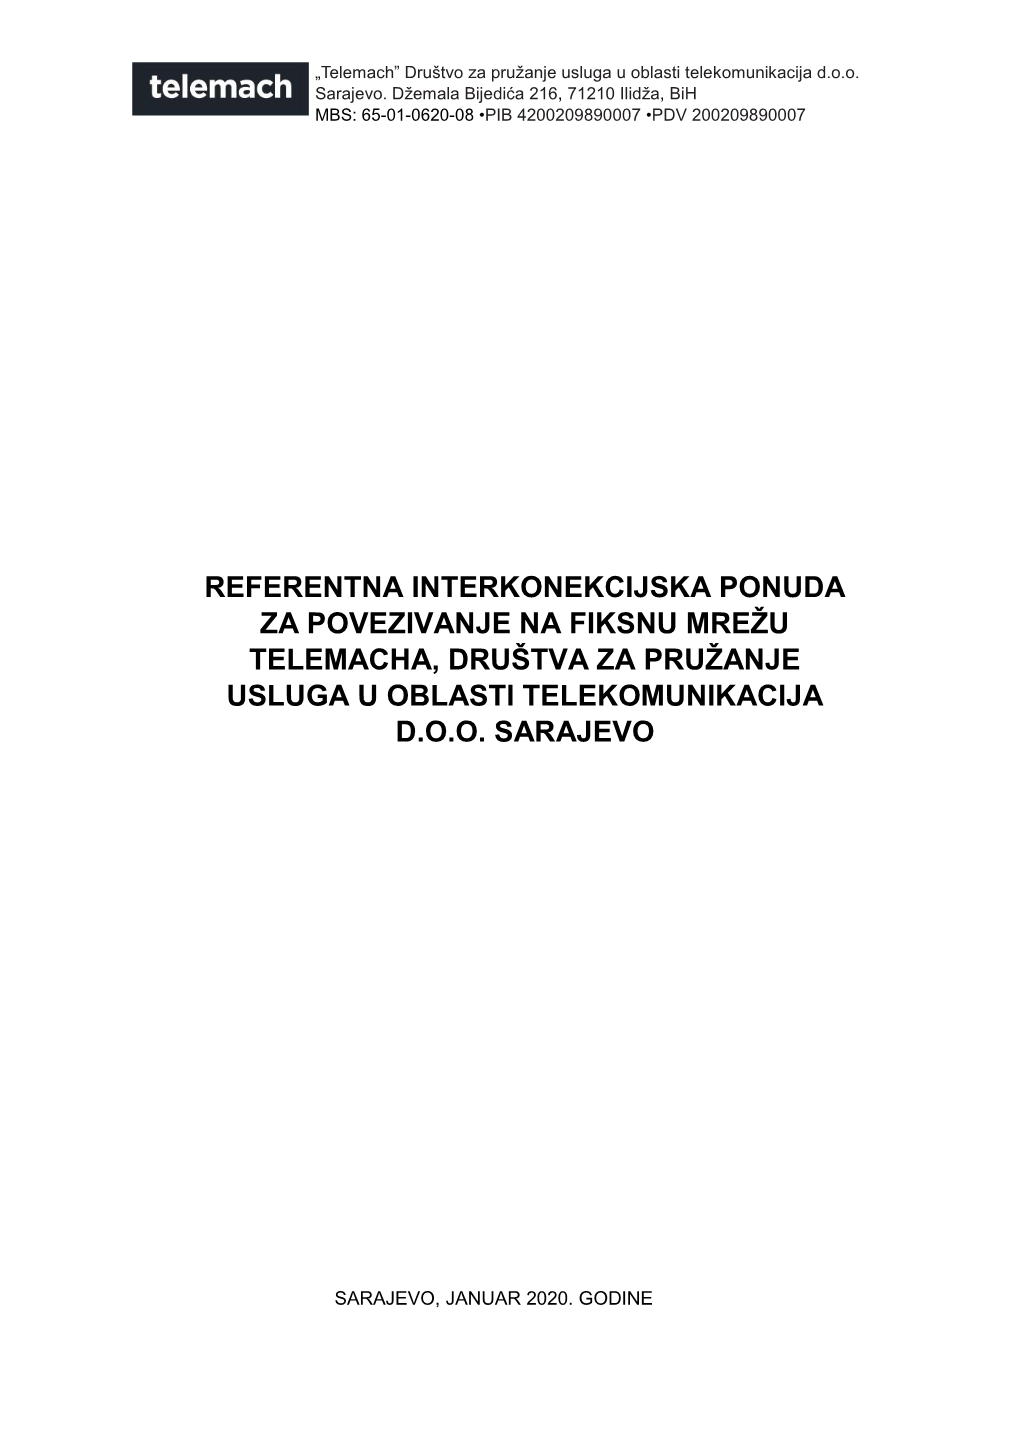 Referentna Interkonekcijska Ponuda Za Povezivanje Na Fiksnu Mrežu Telemacha, Društva Za Pružanje Usluga U Oblasti Telekomunikacija D.O.O